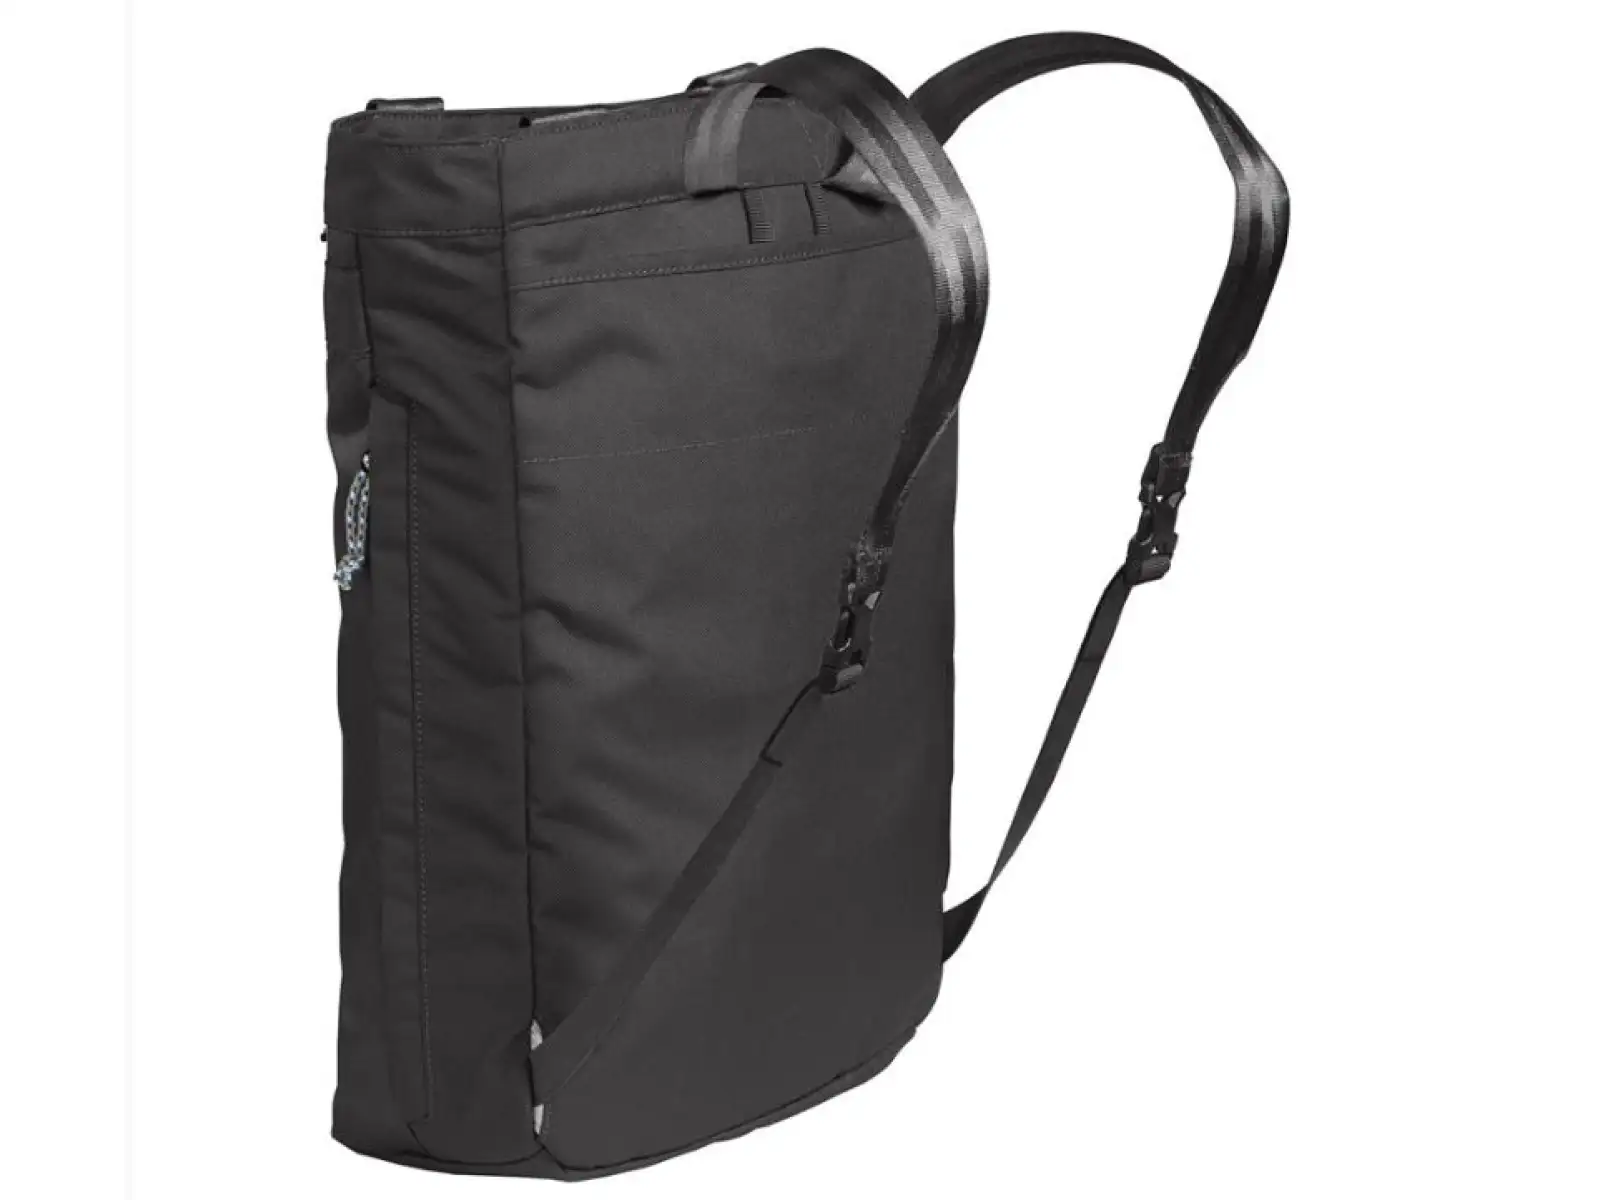 Camelbak Pivot Tote Pack taška přes rameno Black